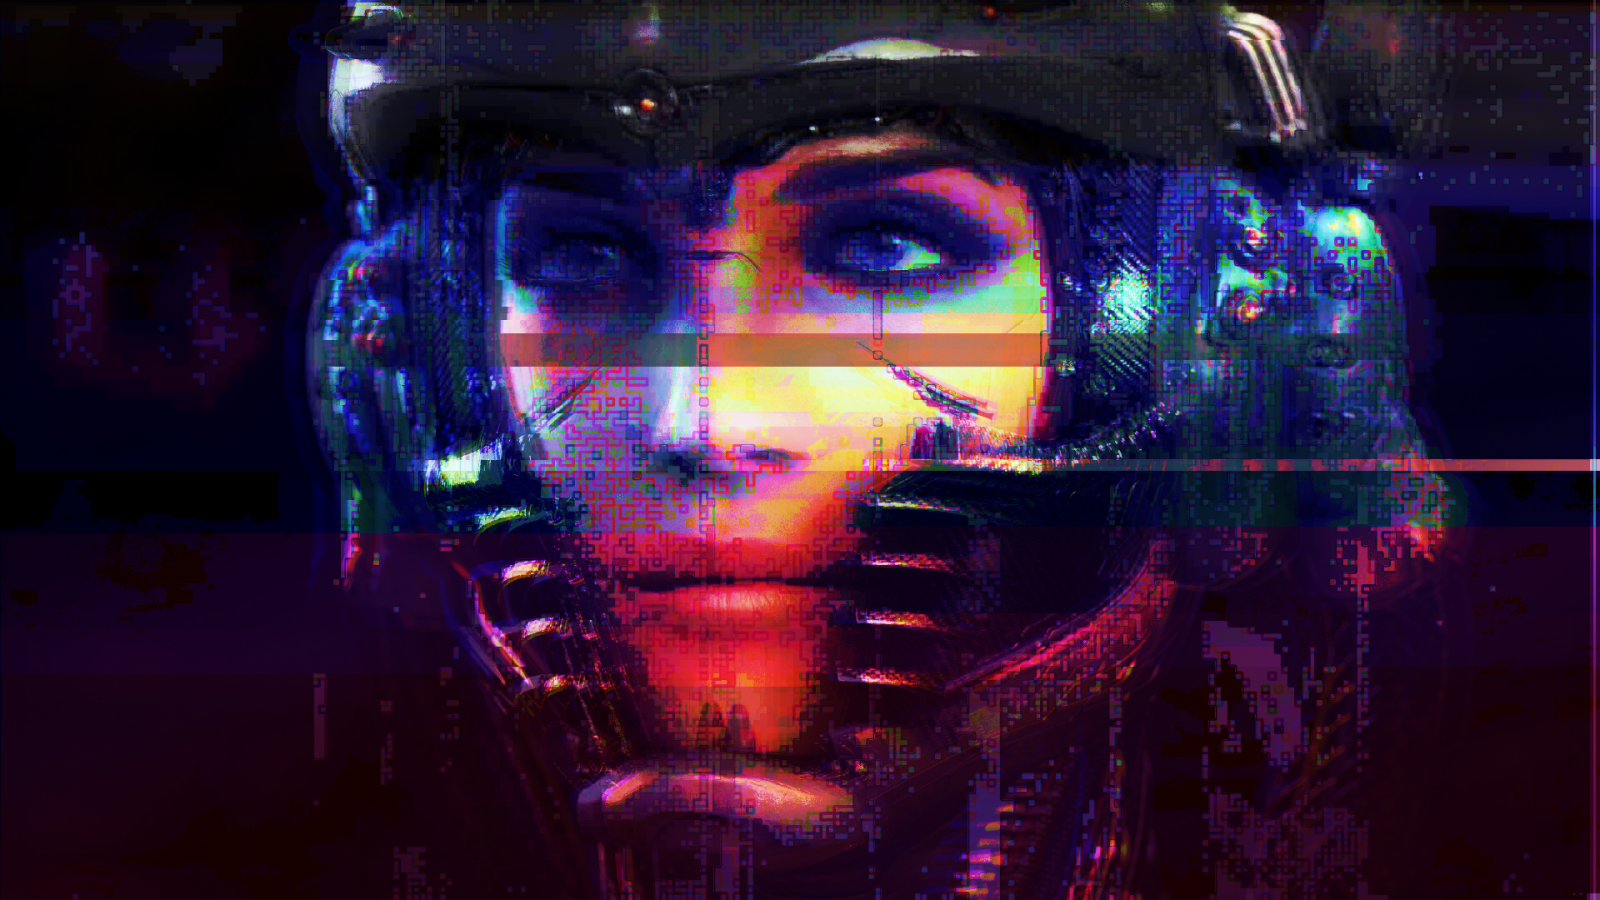 Wallpaper, glitch art, cyberpunk, robot, cyborg 1920x1080